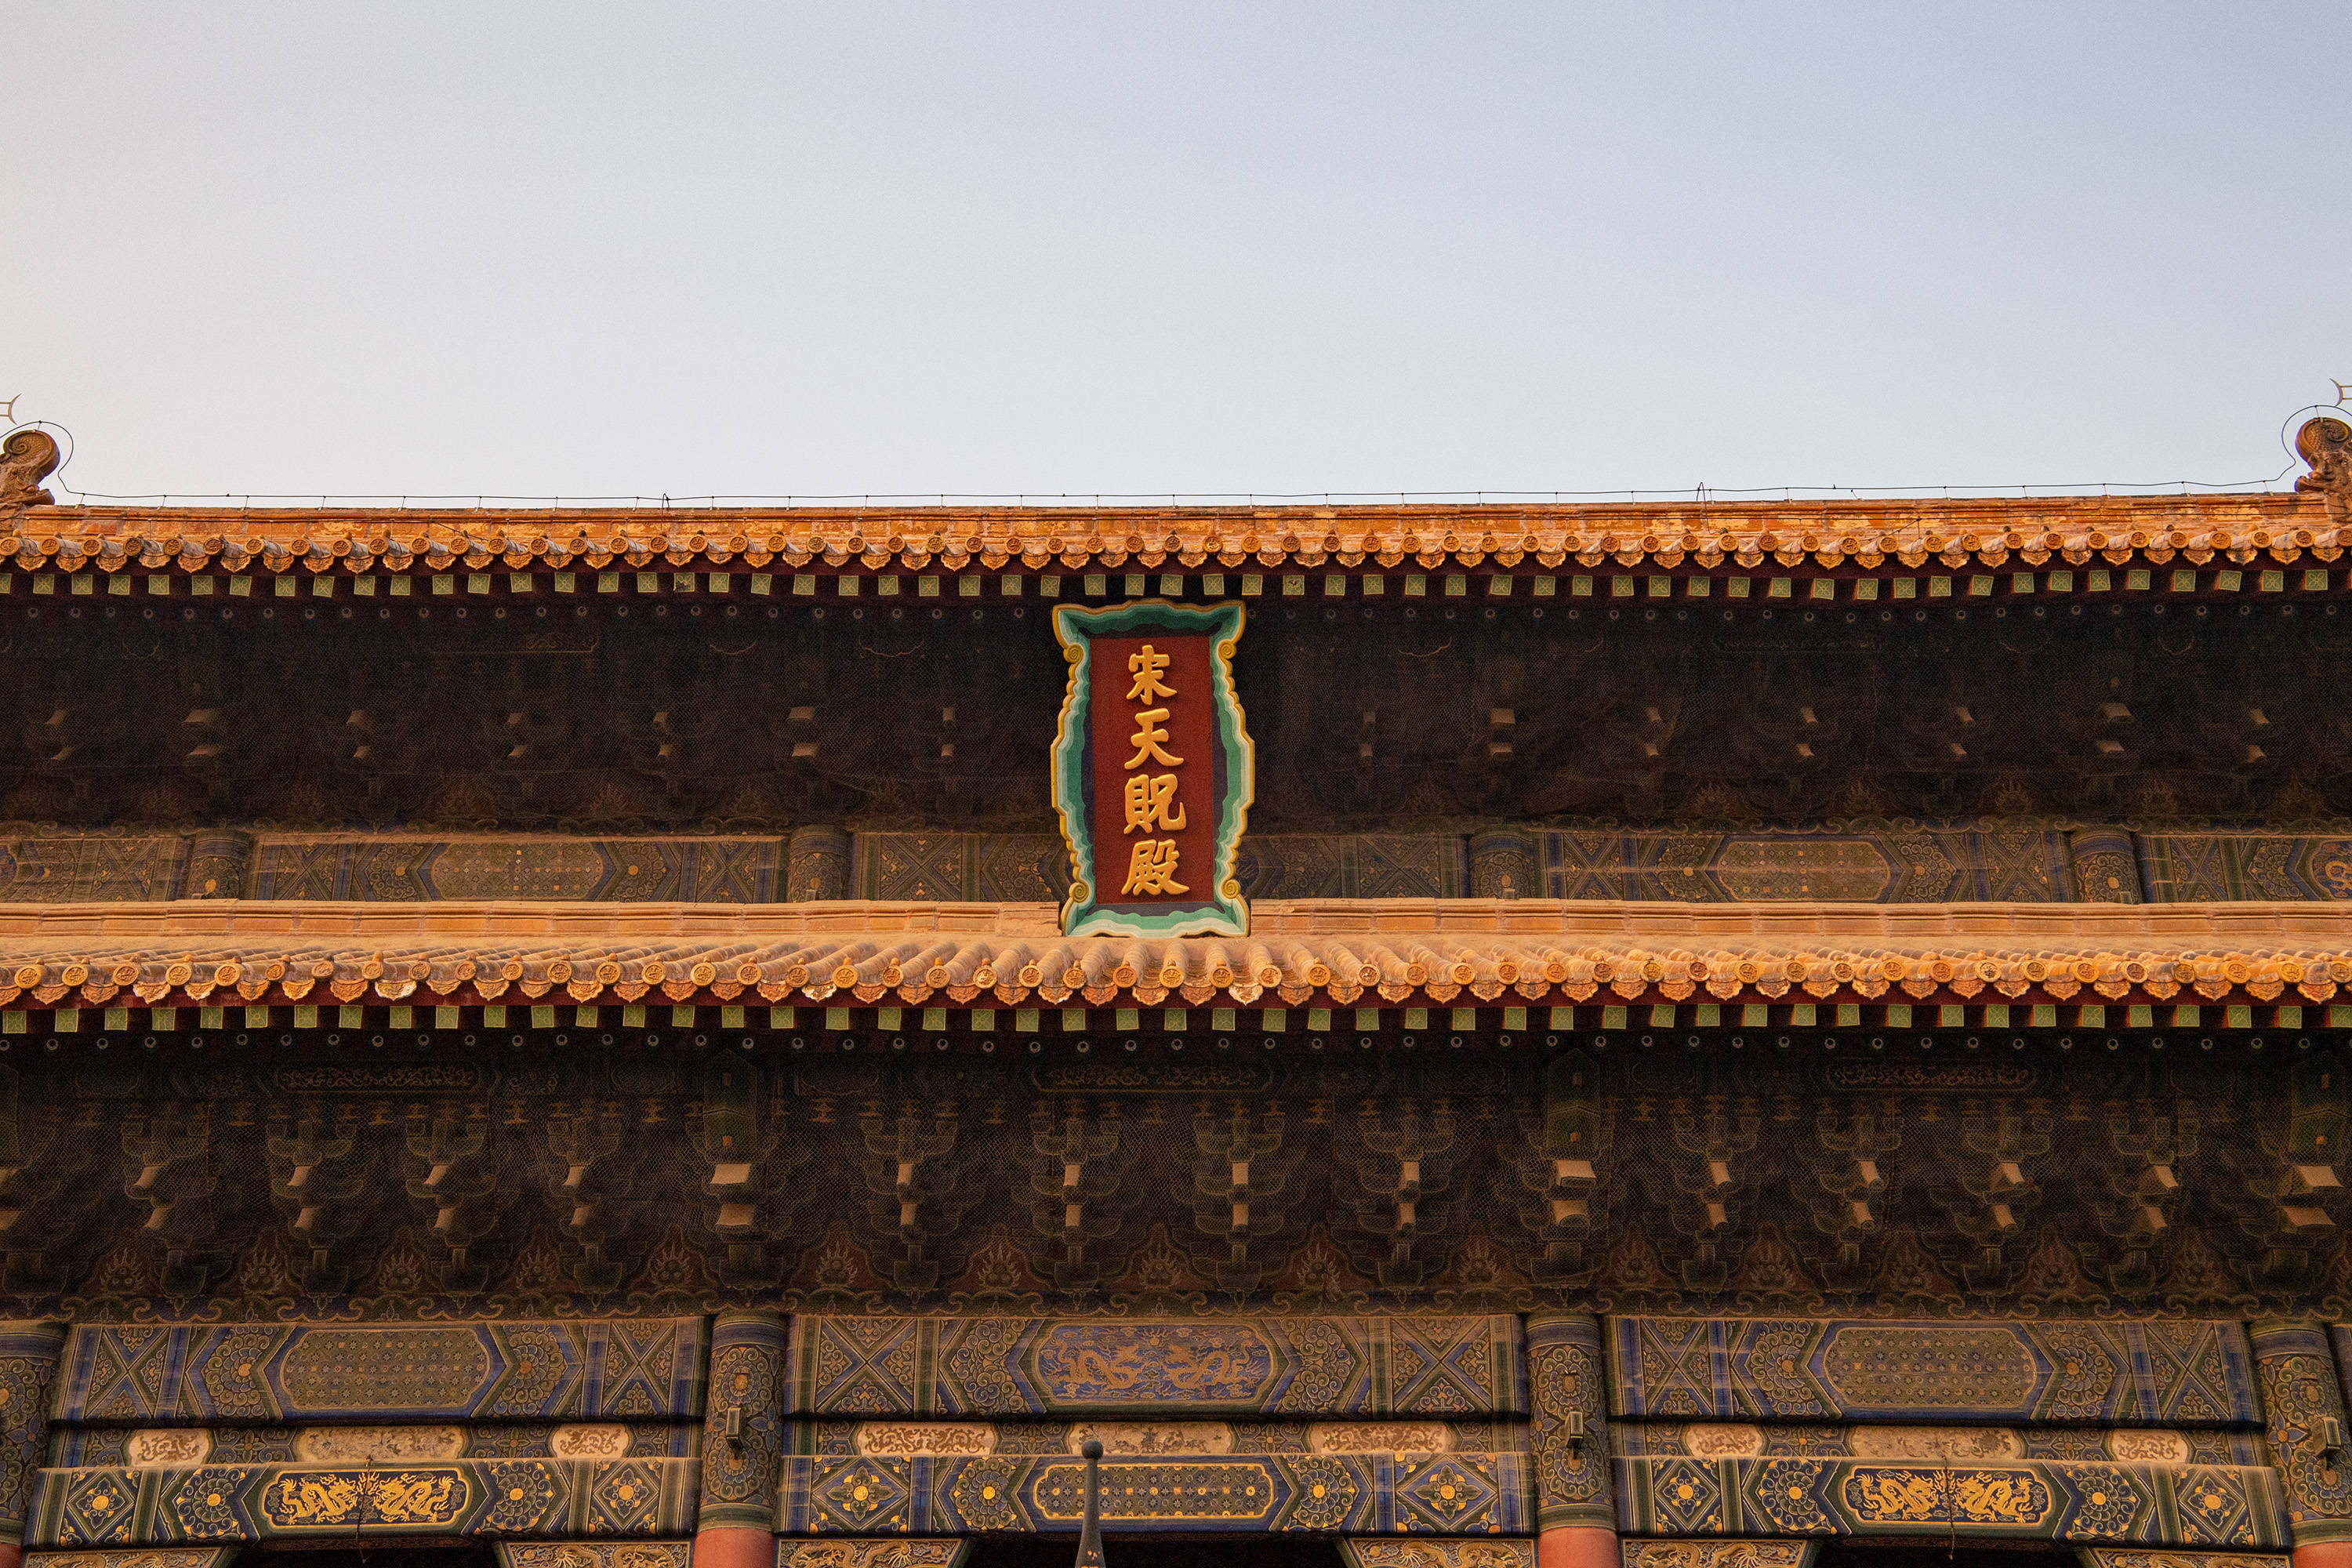 岱庙天贶殿,中国三大宫殿之一,却源于宋真宗谋划的一场骗局